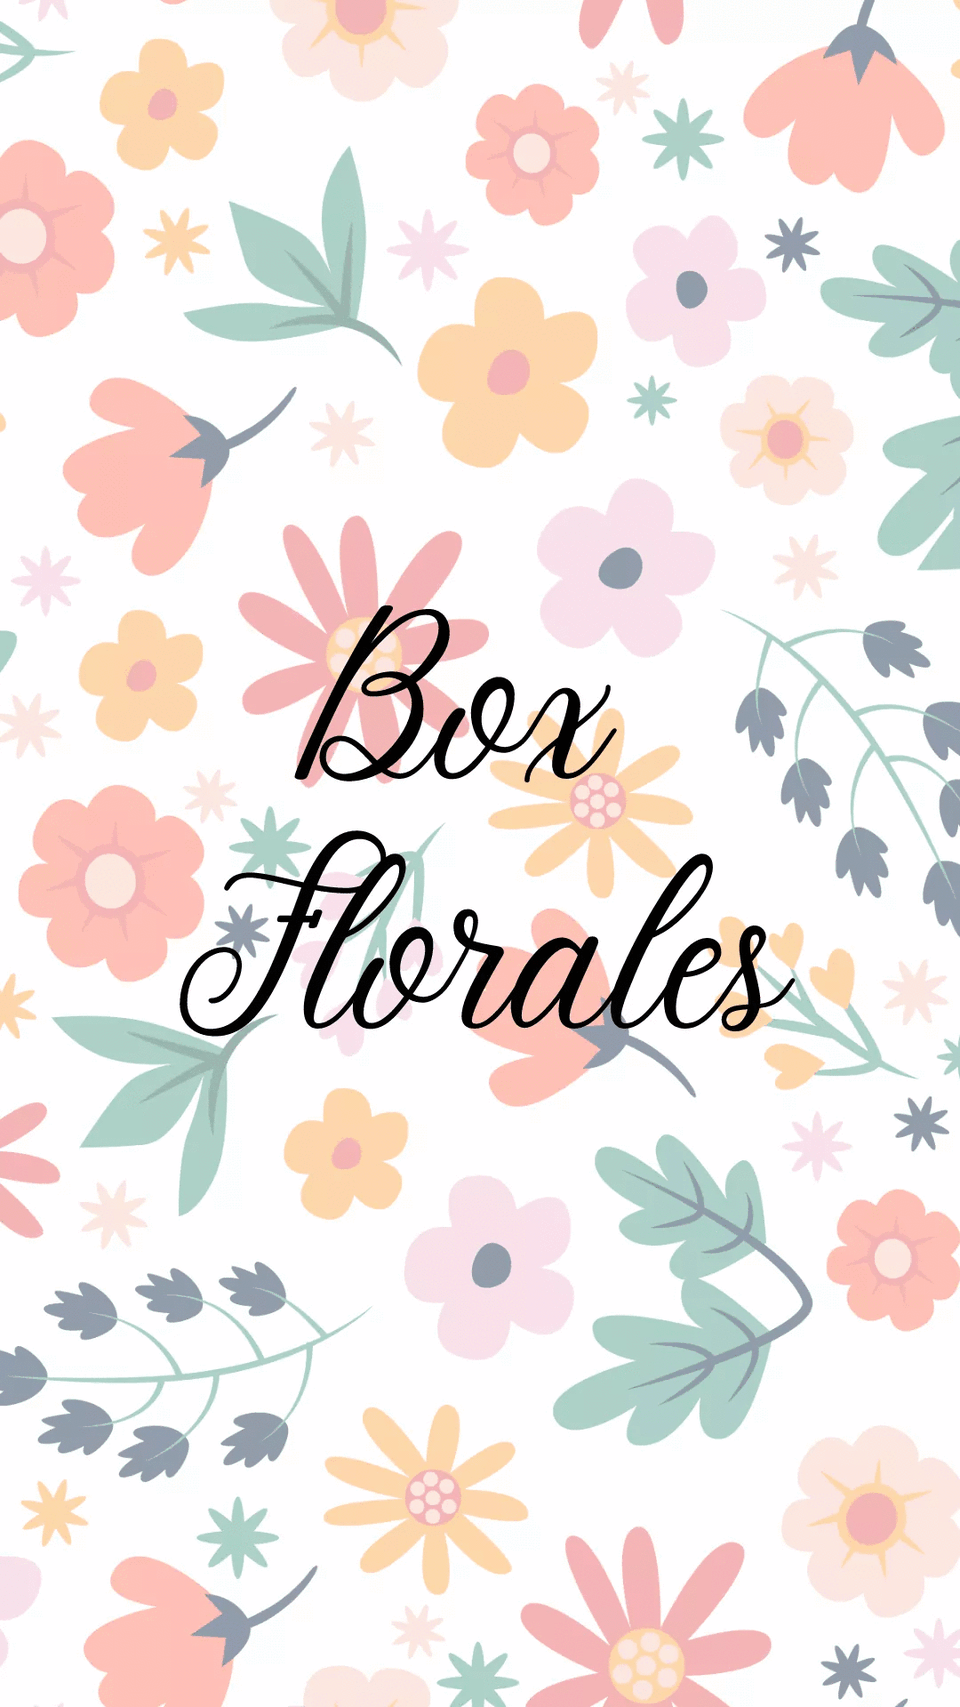 Box florale